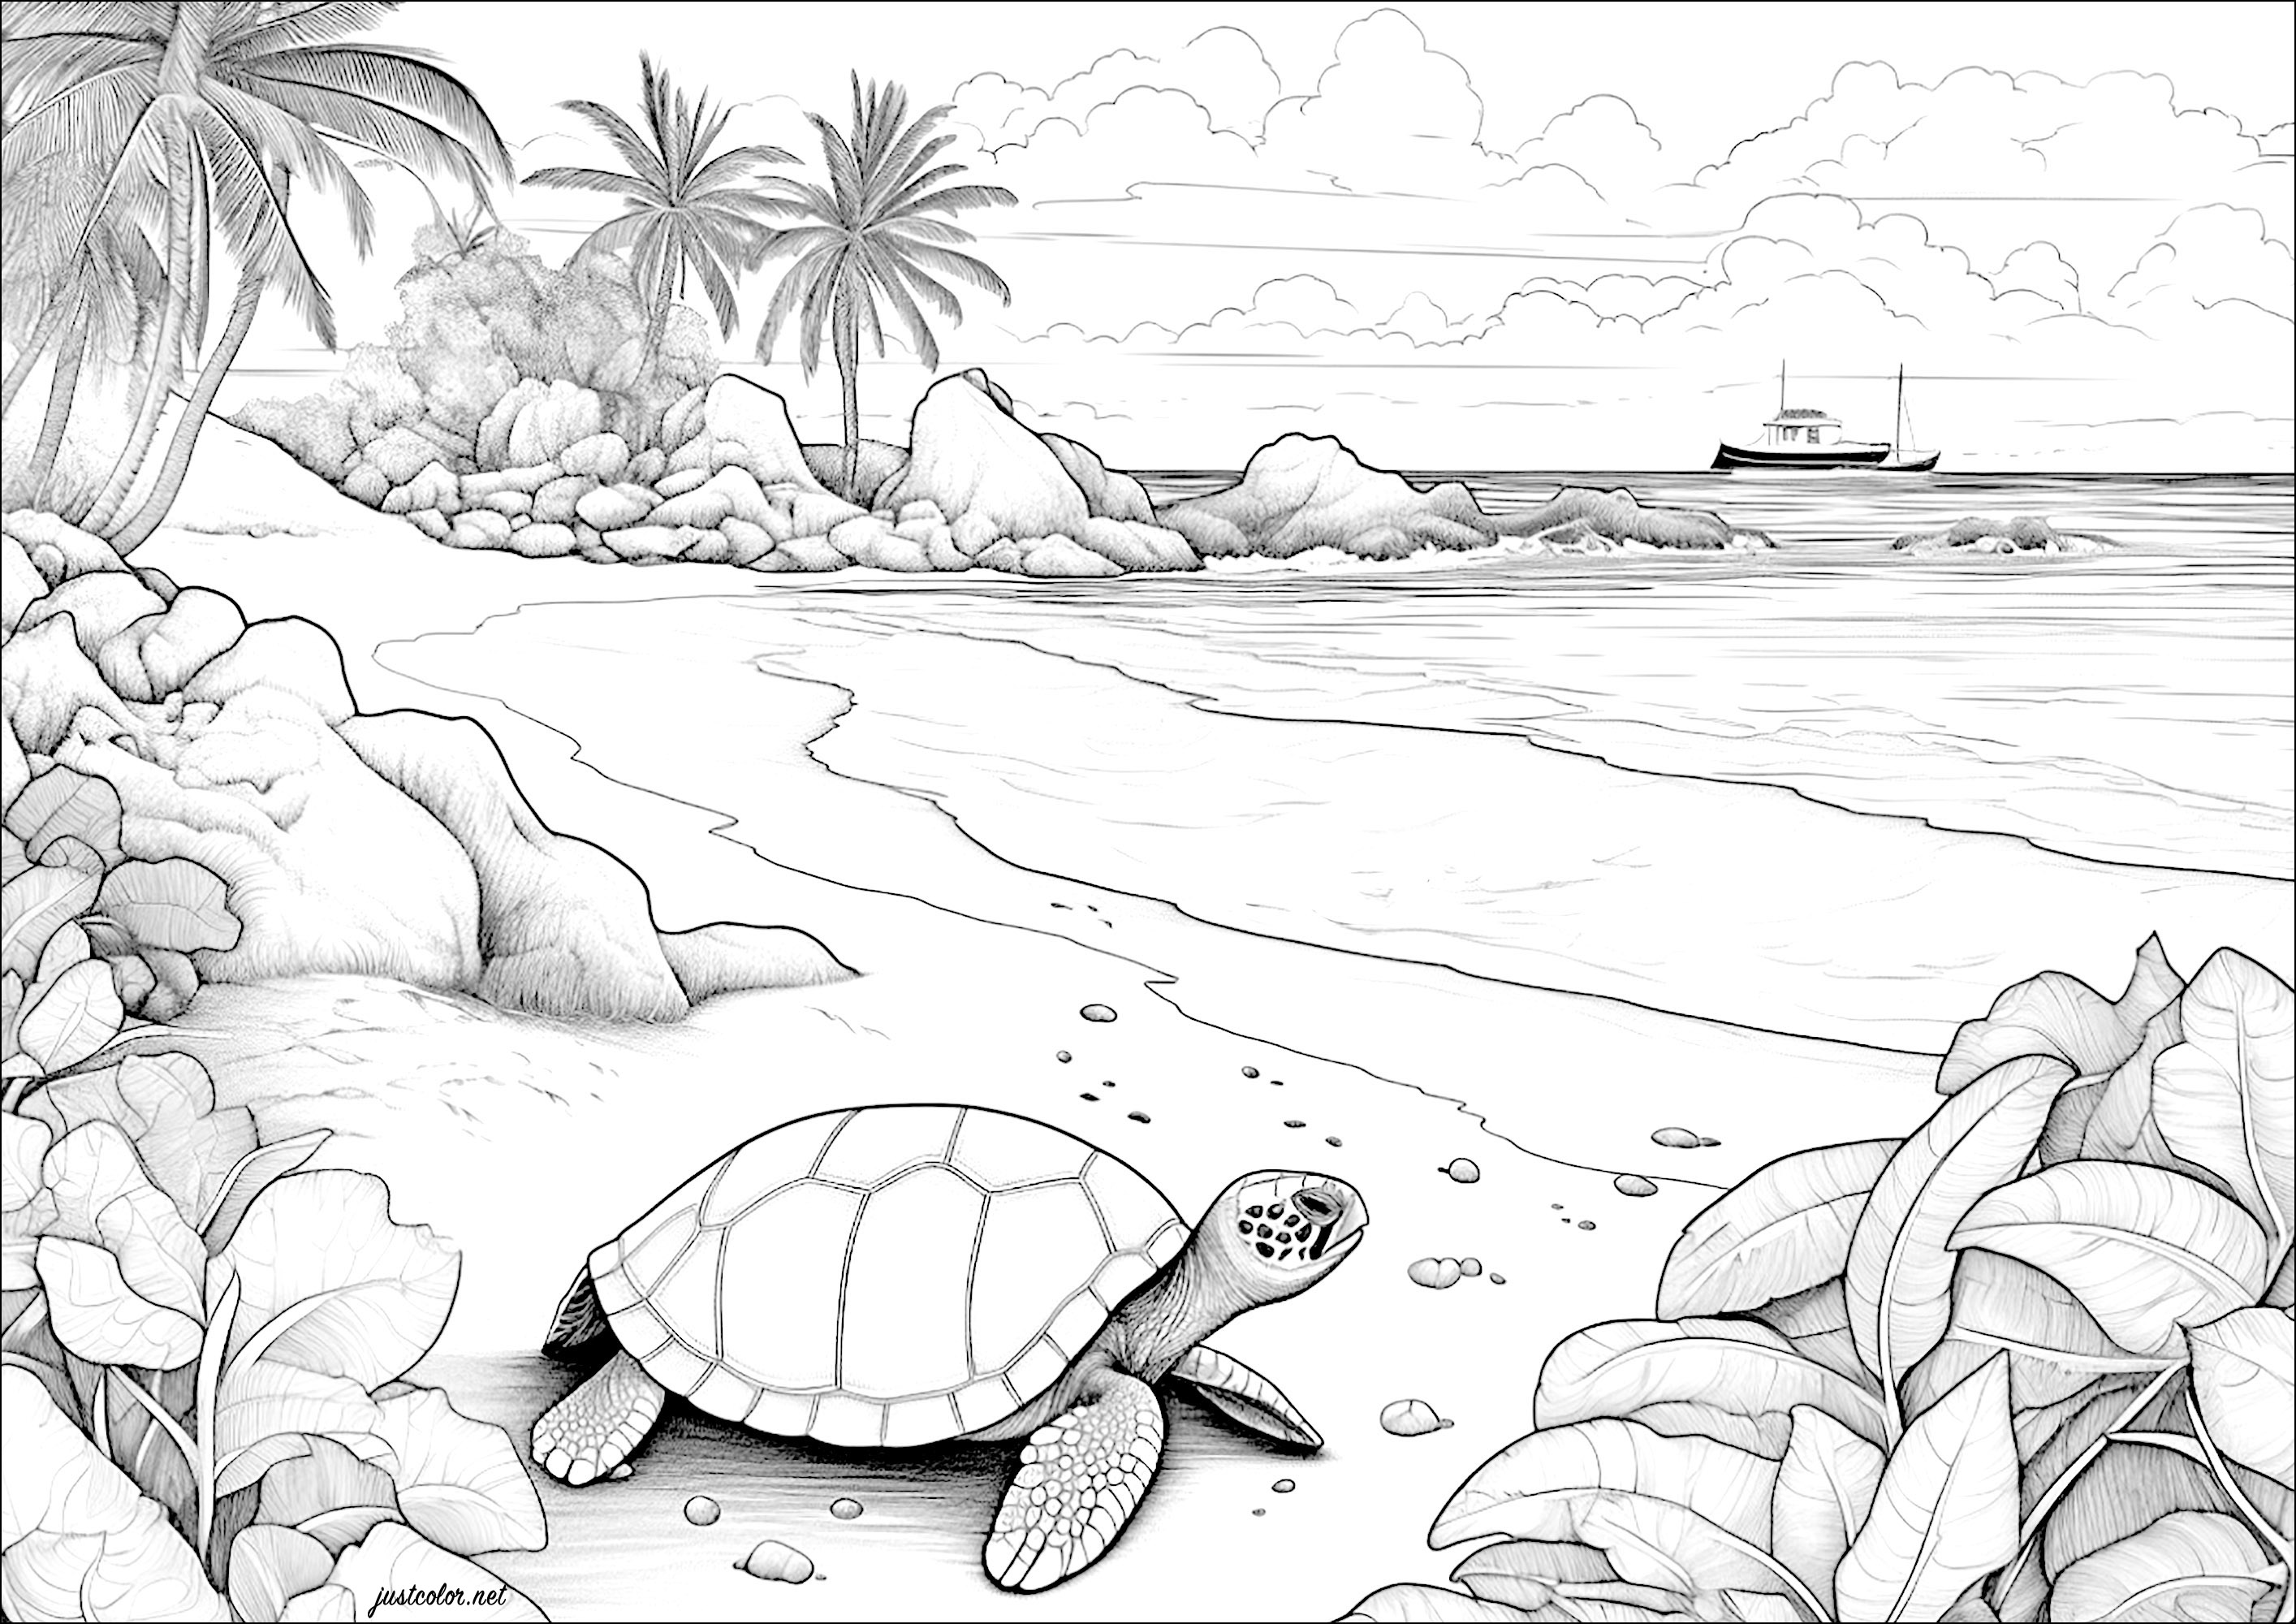 Tartaruga su una spiaggia con una barca in lontananza. Vi piacerebbe viaggiare in questa isola paradisiaca?